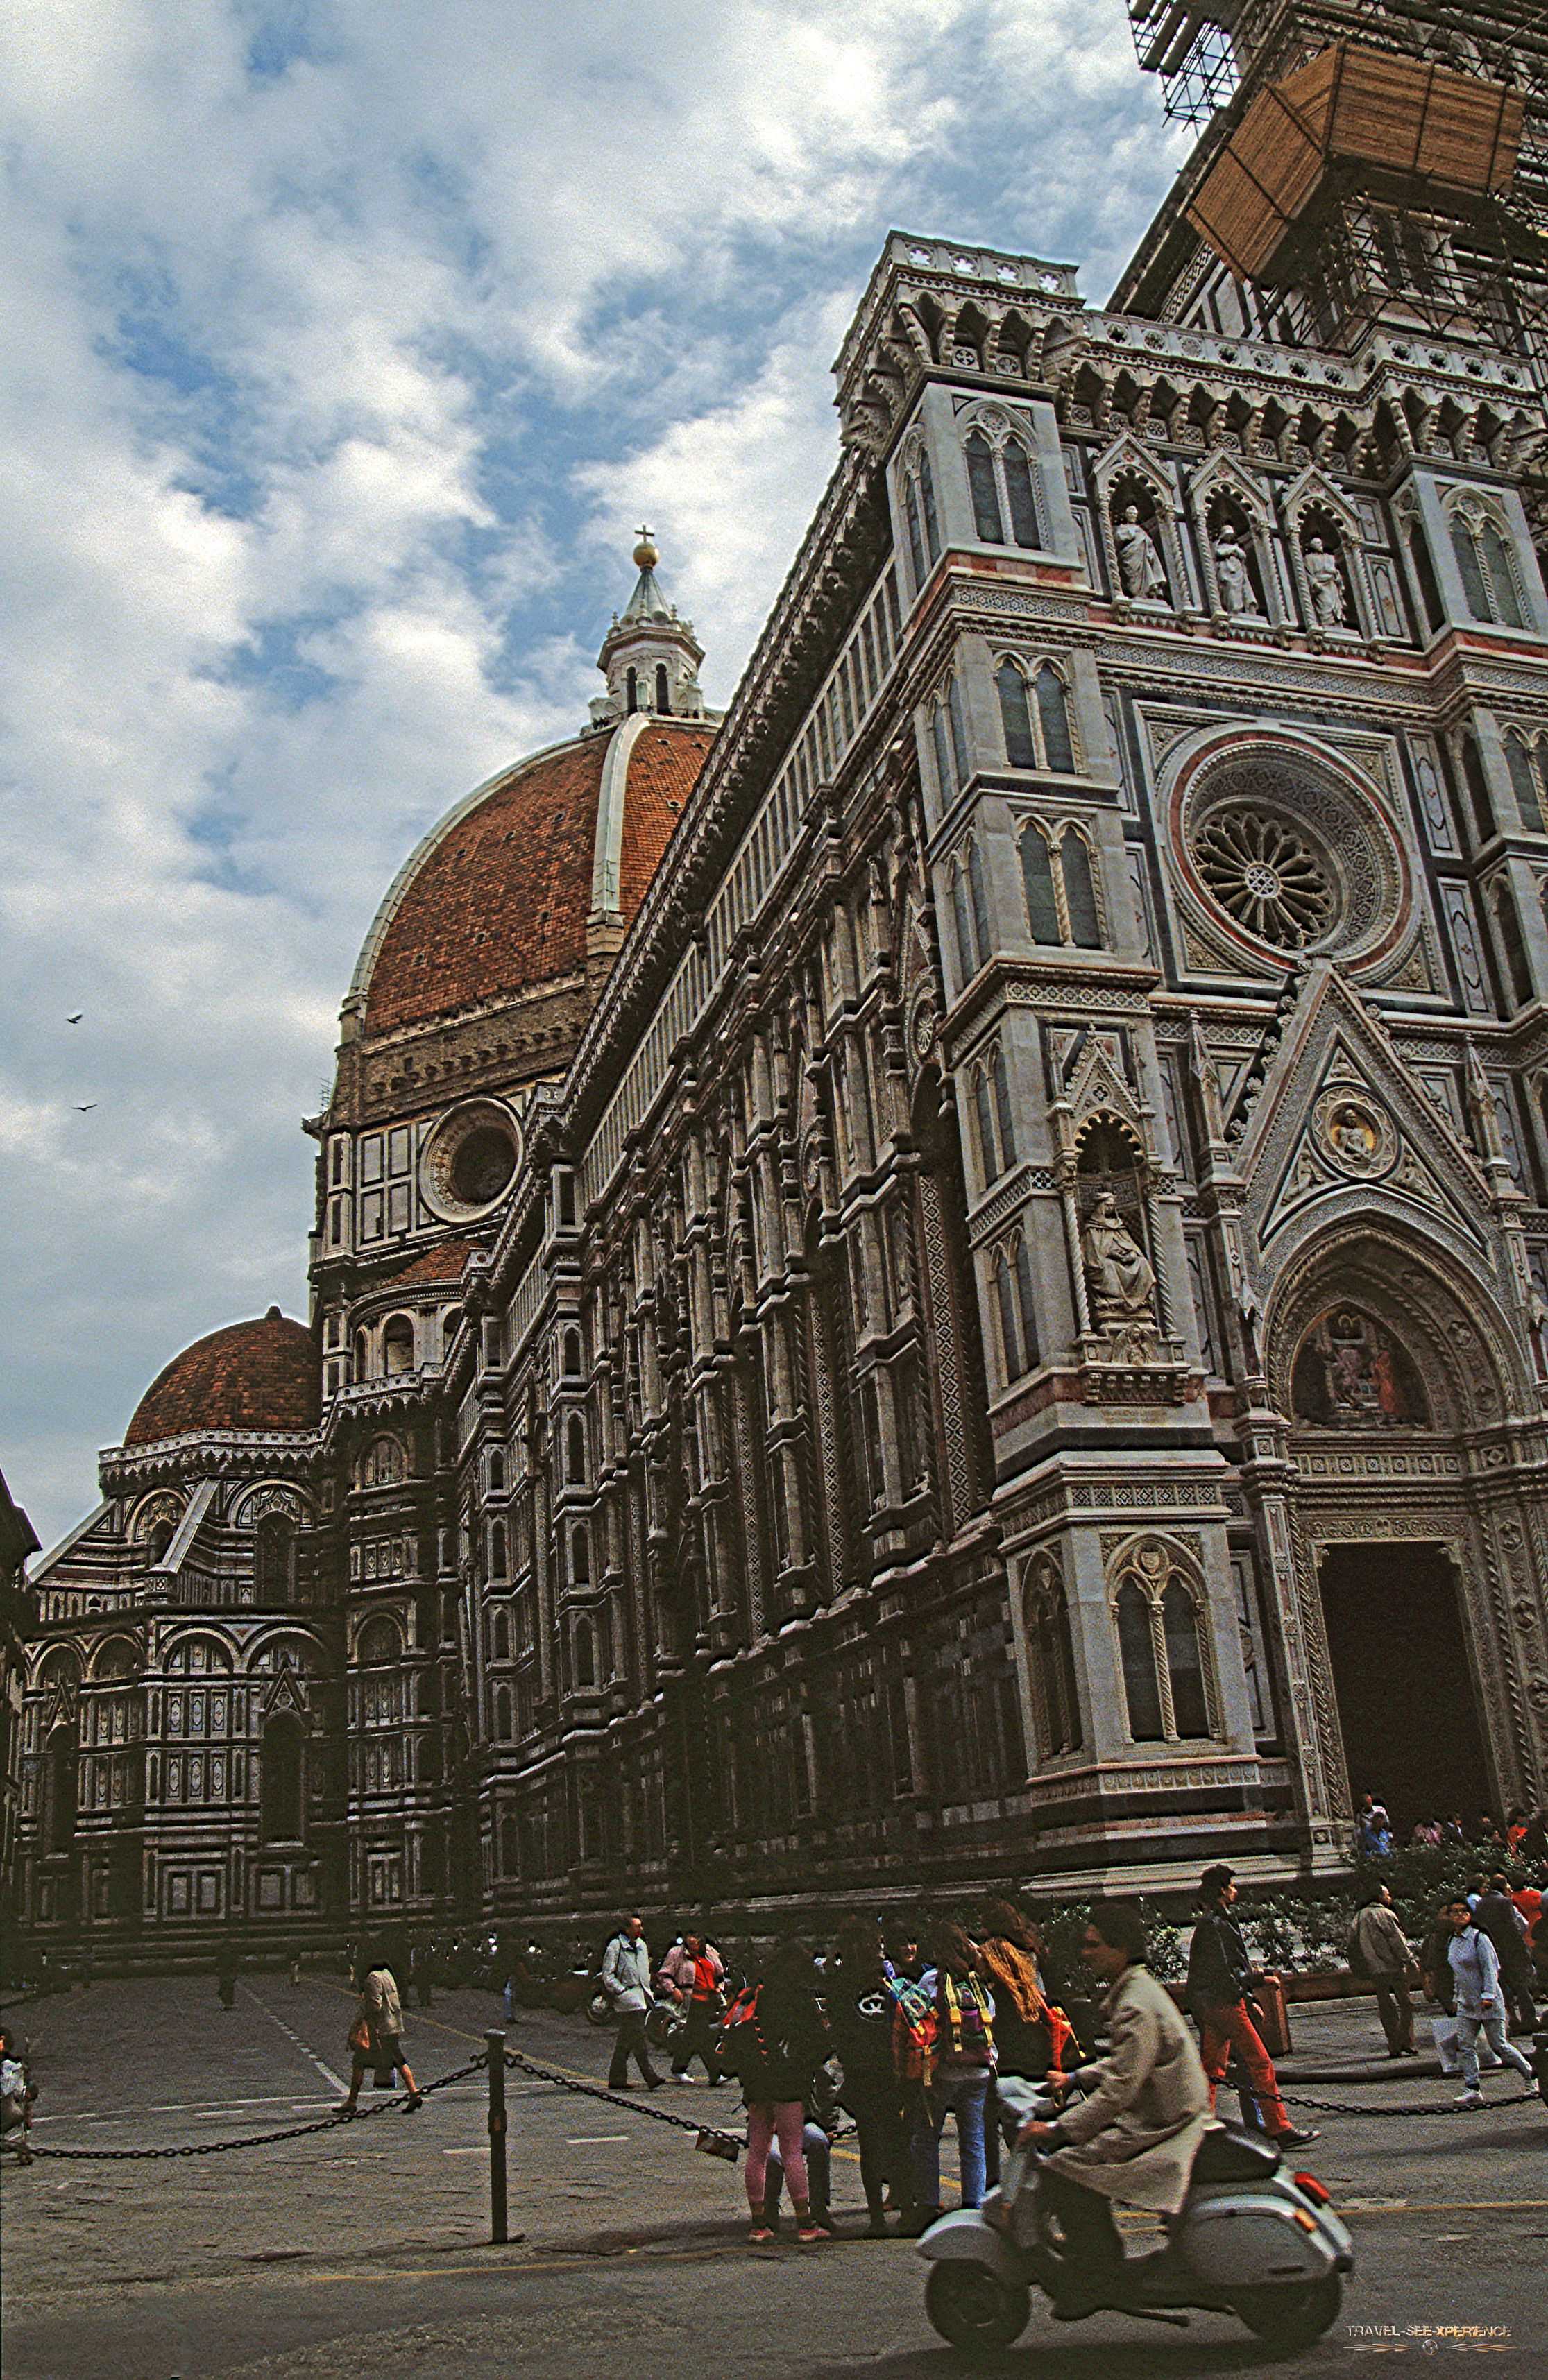 Florenz – Benvenuti nella bella Firenze